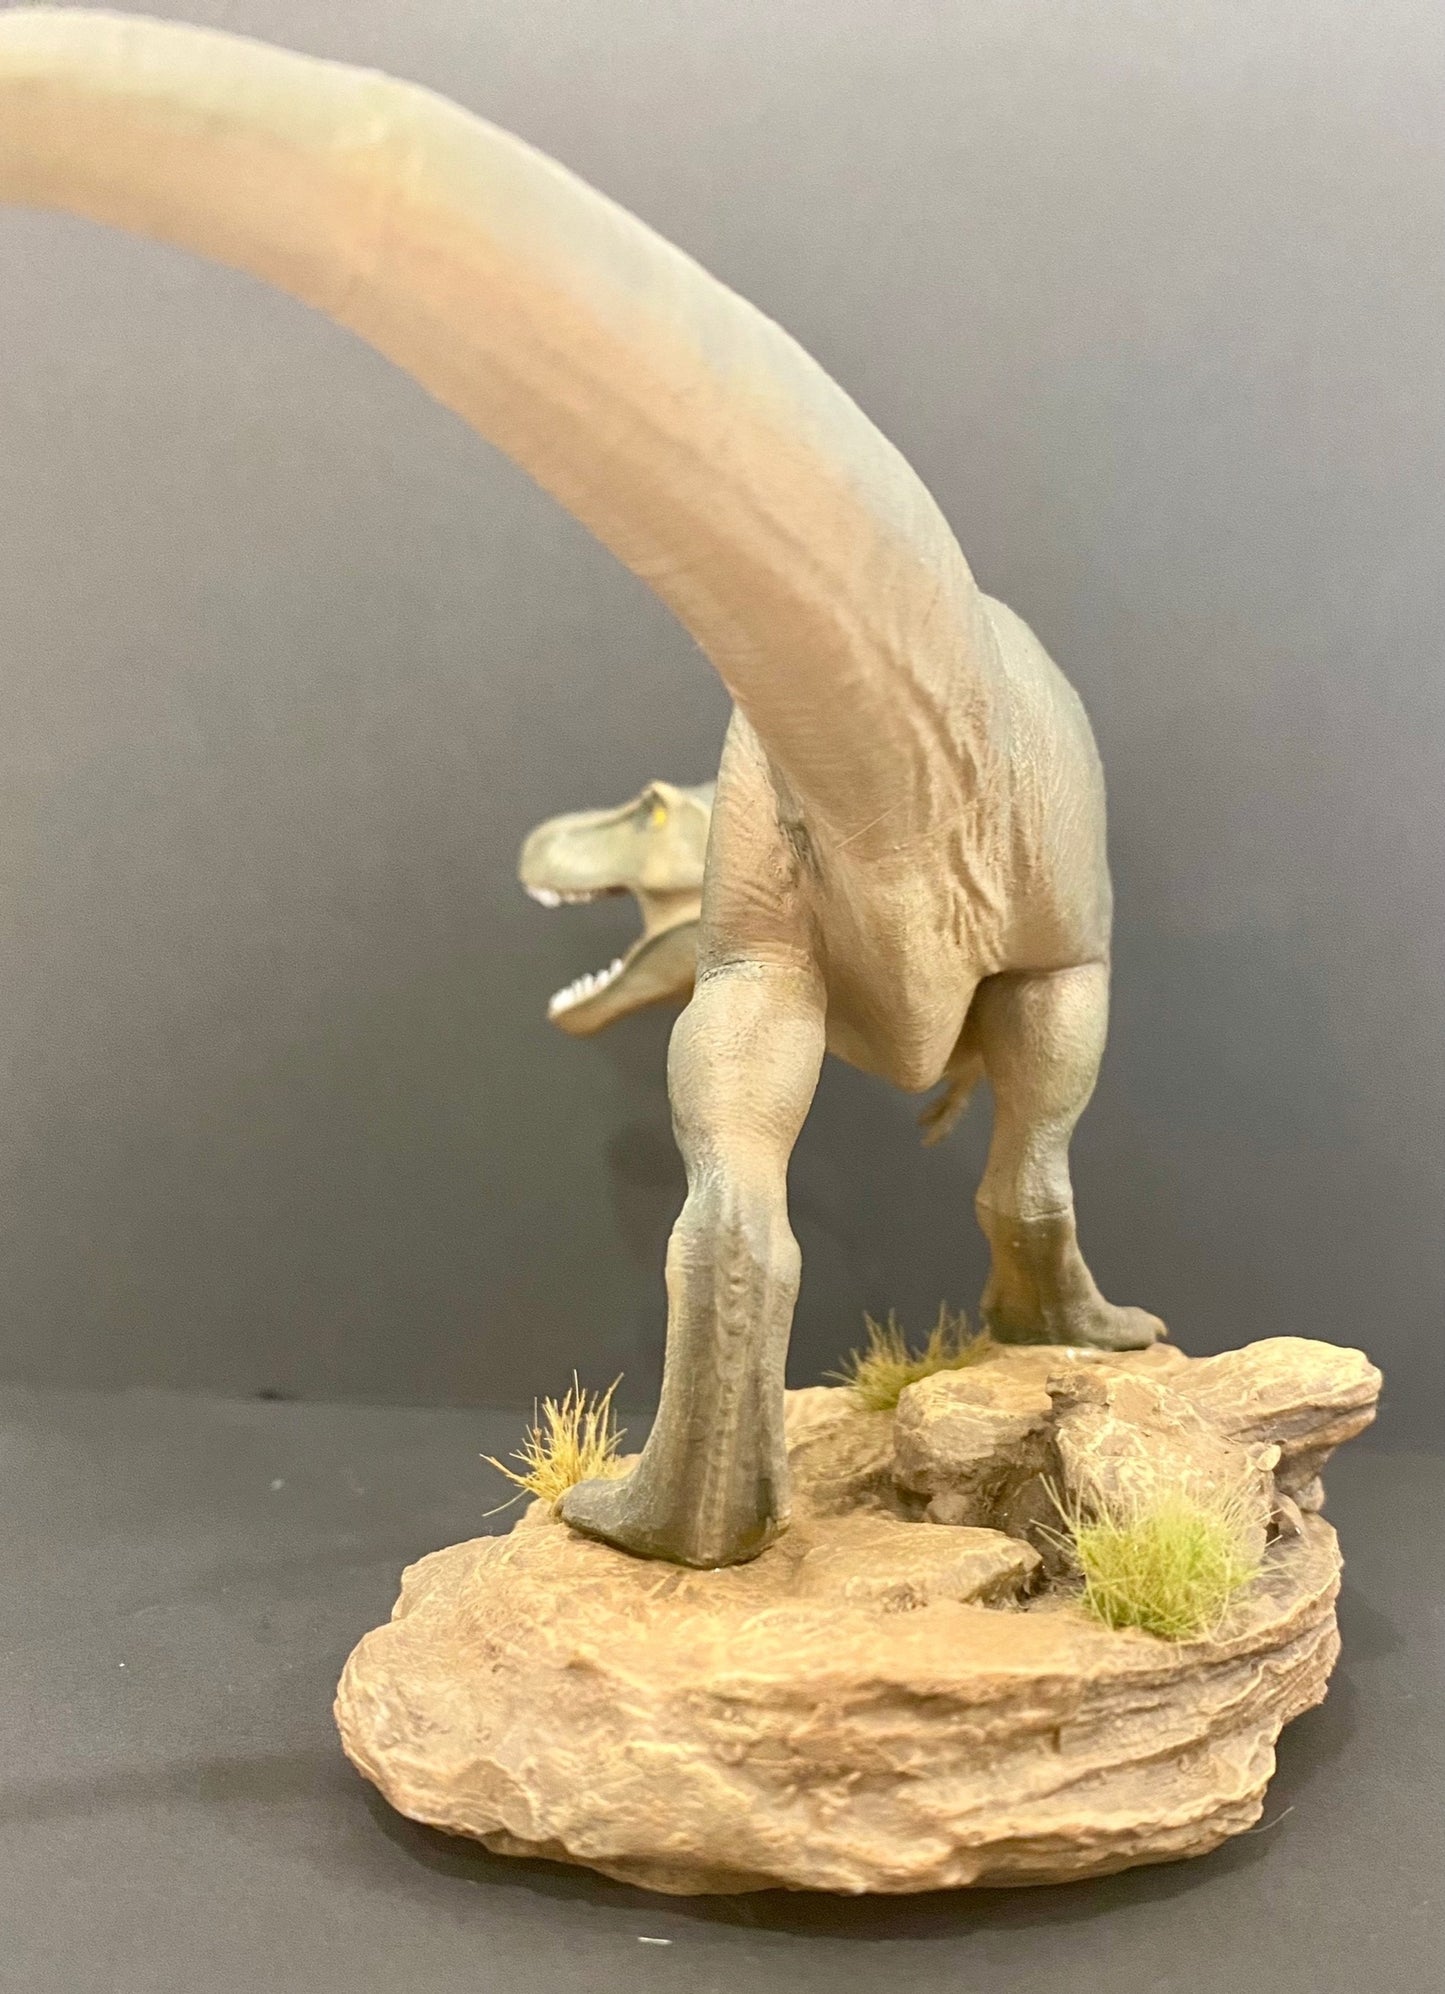 Height 95mm Resin Model Kit Jurassic Park Tyrannosaurus Rex Animal Unpainted